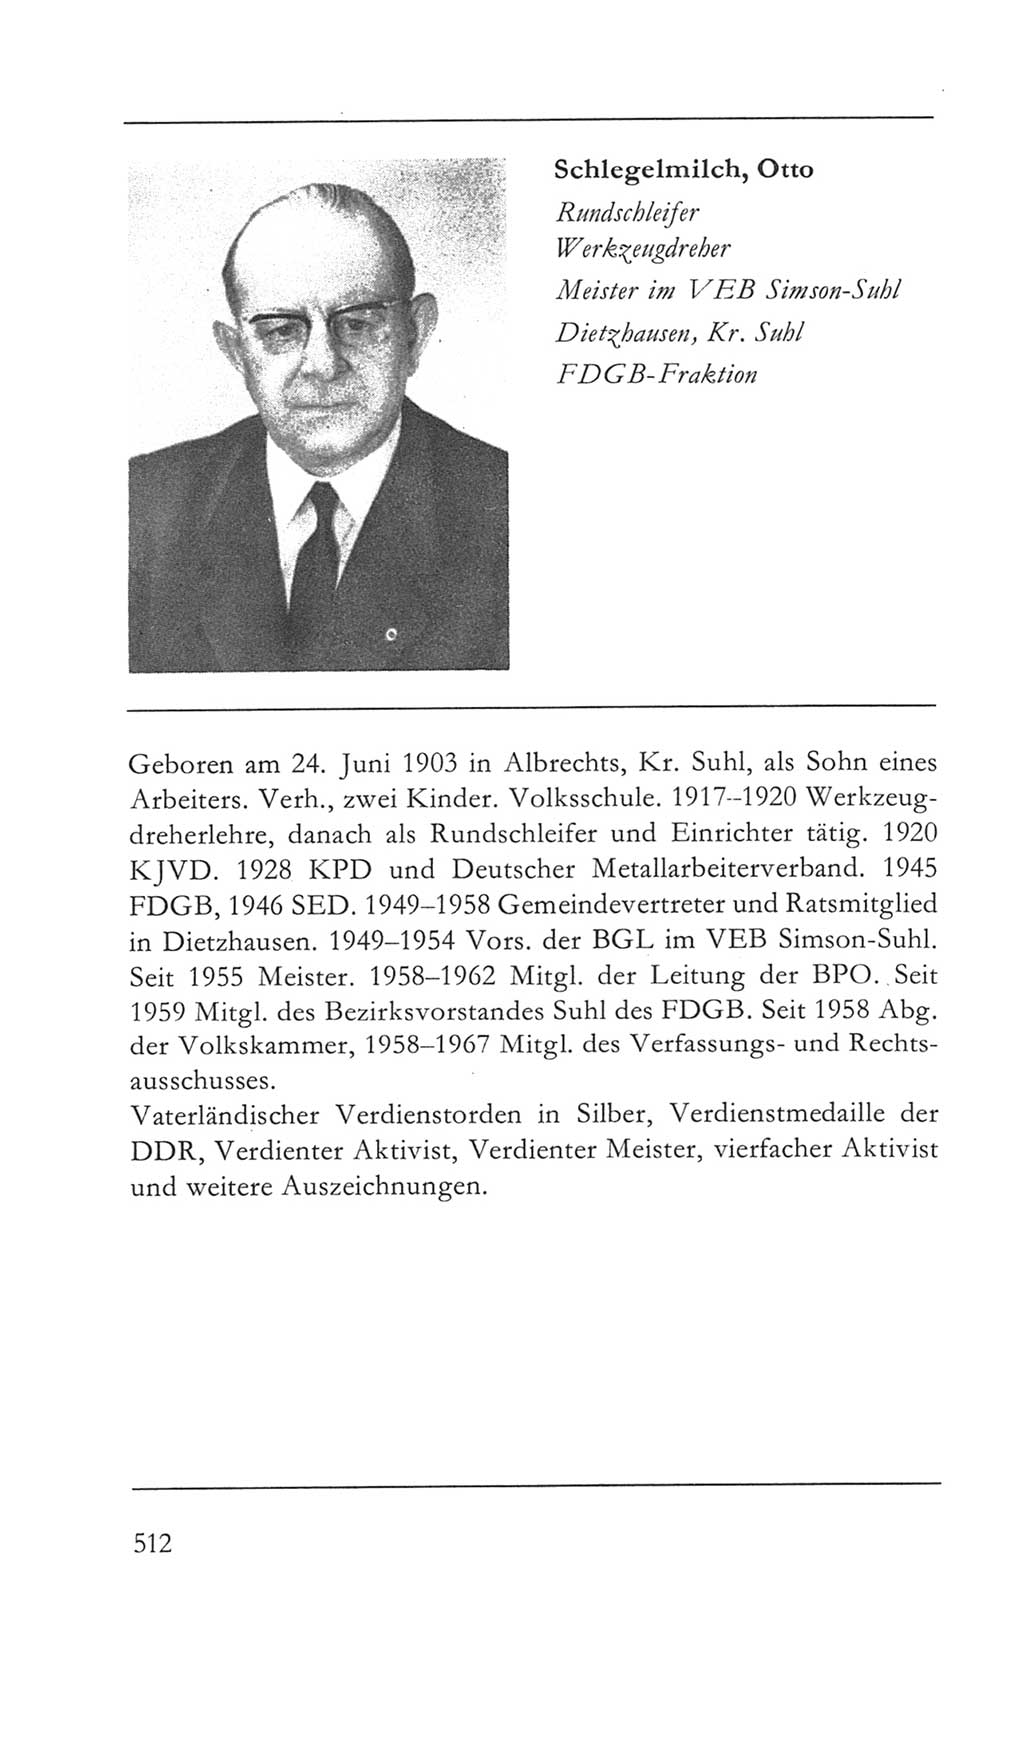 Volkskammer (VK) der Deutschen Demokratischen Republik (DDR) 5. Wahlperiode 1967-1971, Seite 512 (VK. DDR 5. WP. 1967-1971, S. 512)